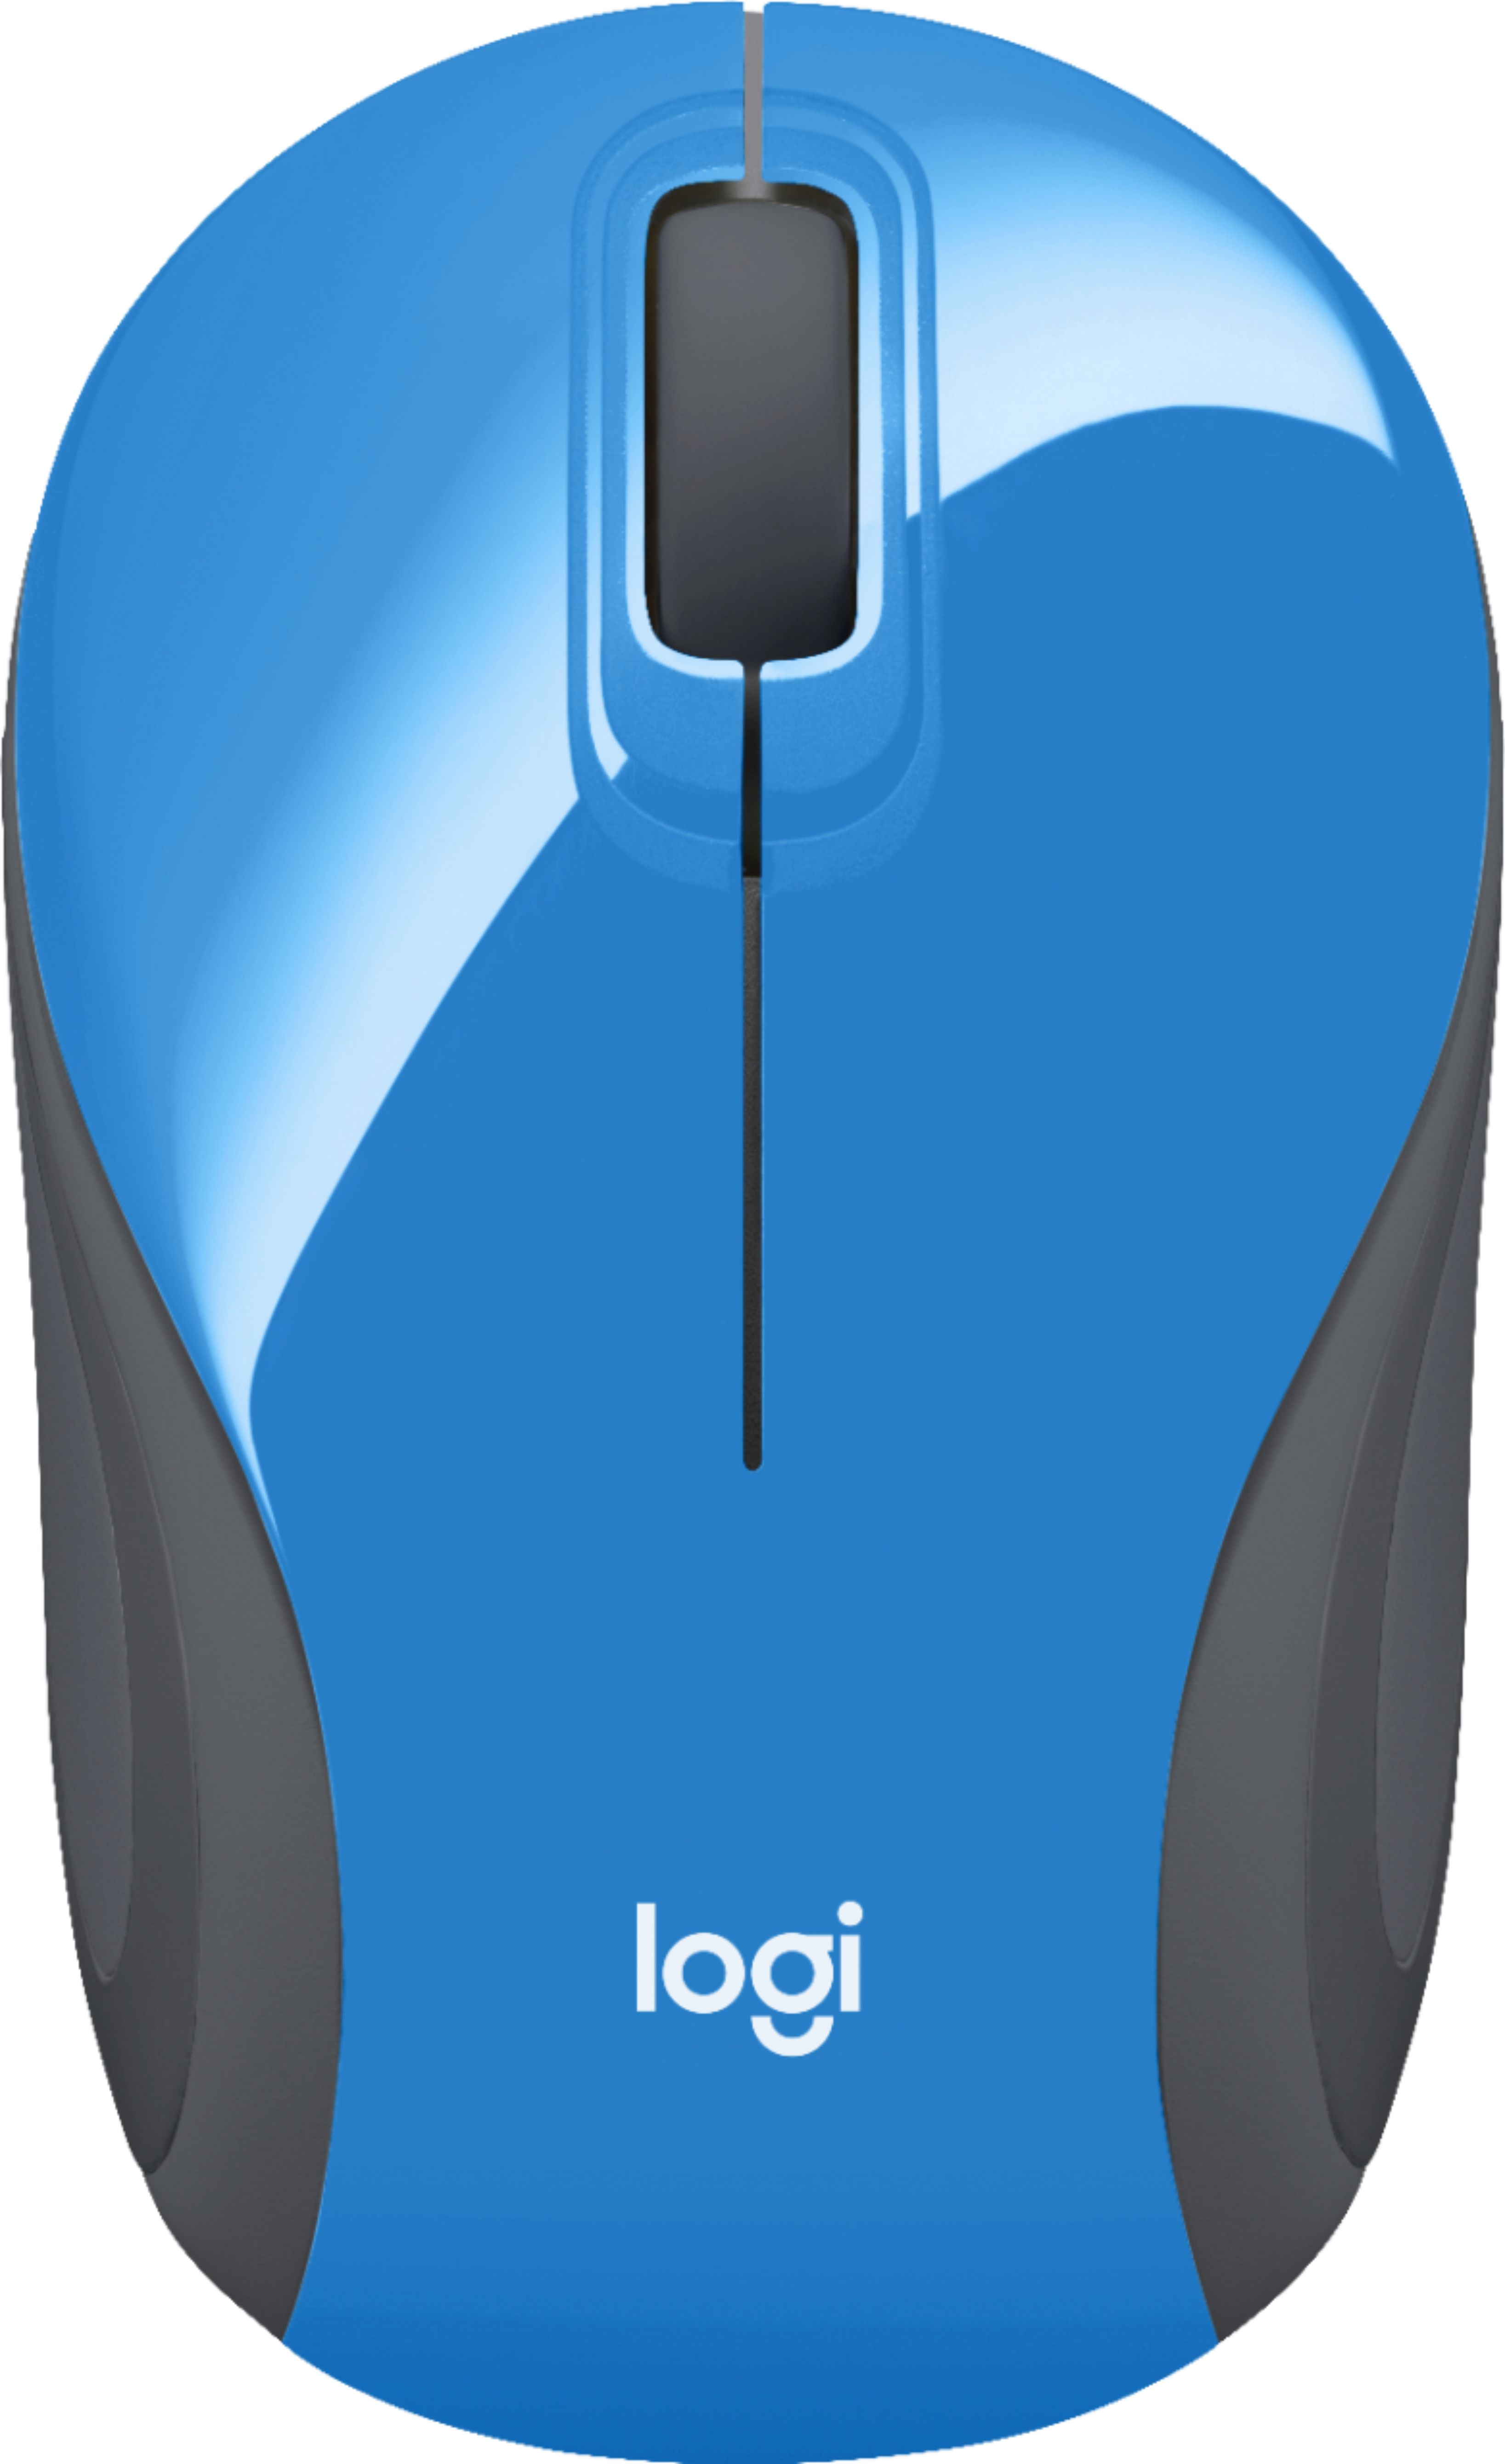 Logitech - Mini souris sans fil M187 (Bleu)